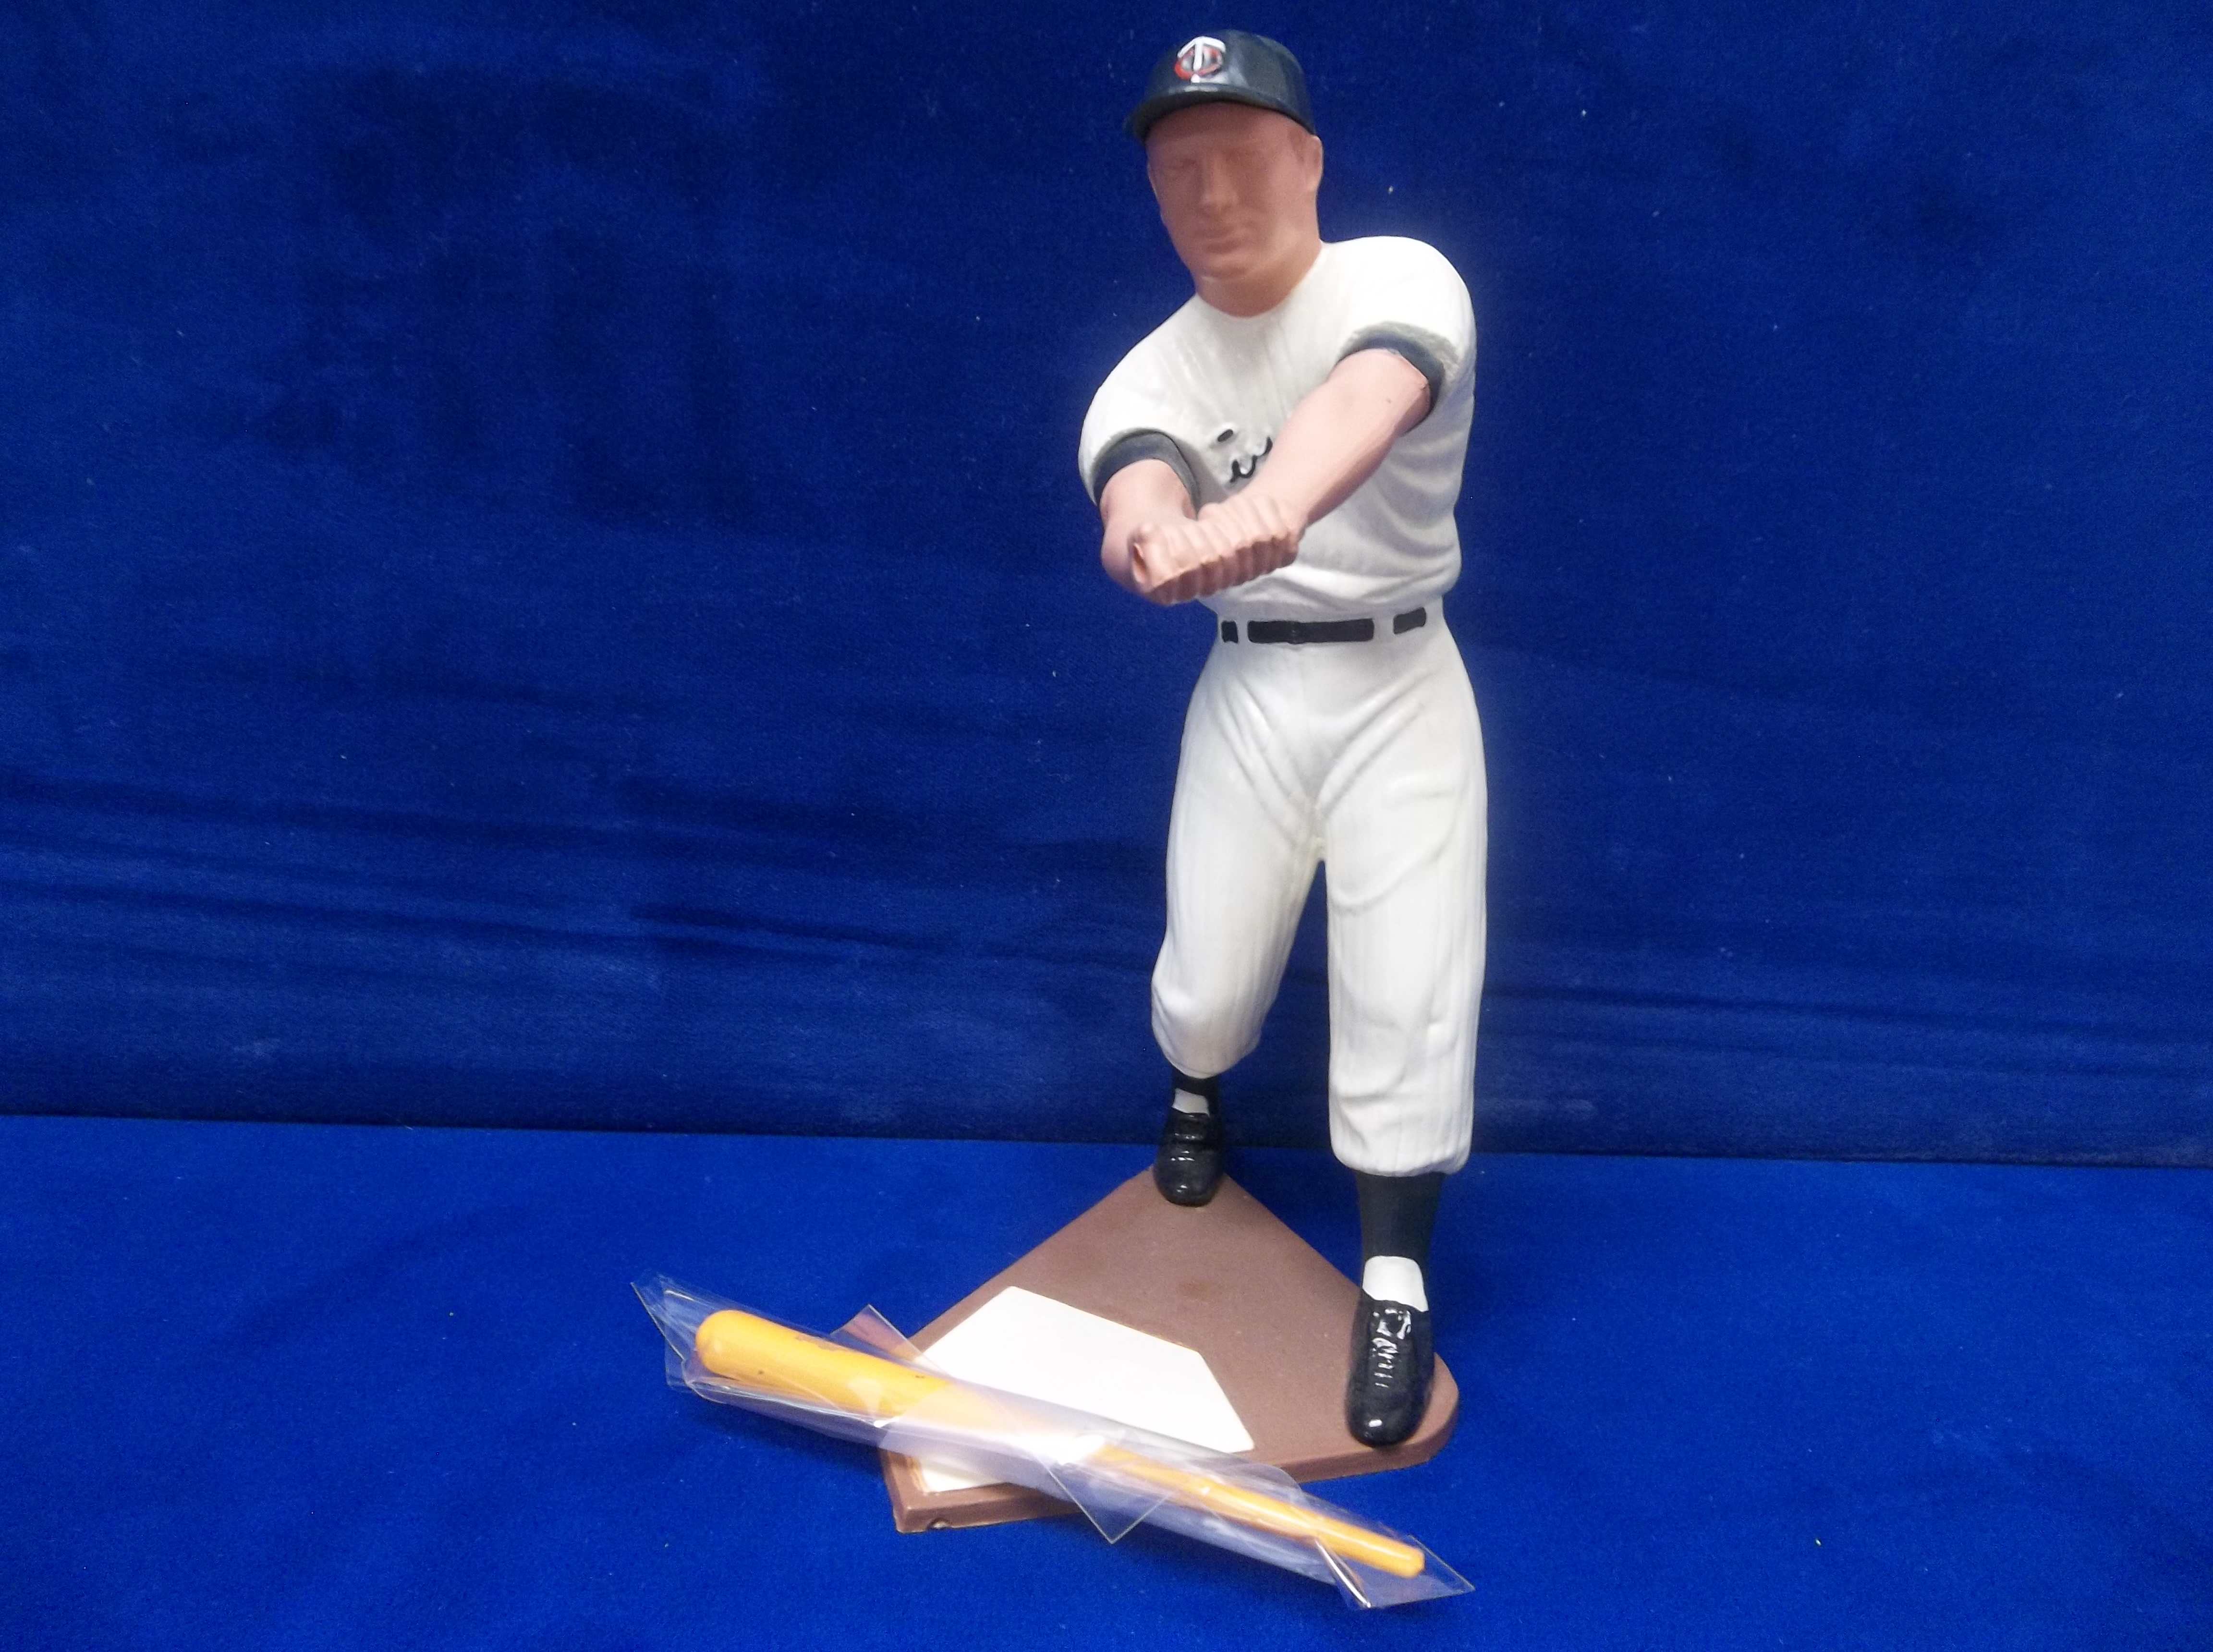 Harmon Killebrew 1988 Baseball Stars 25th Anniversary Commemorative Statue